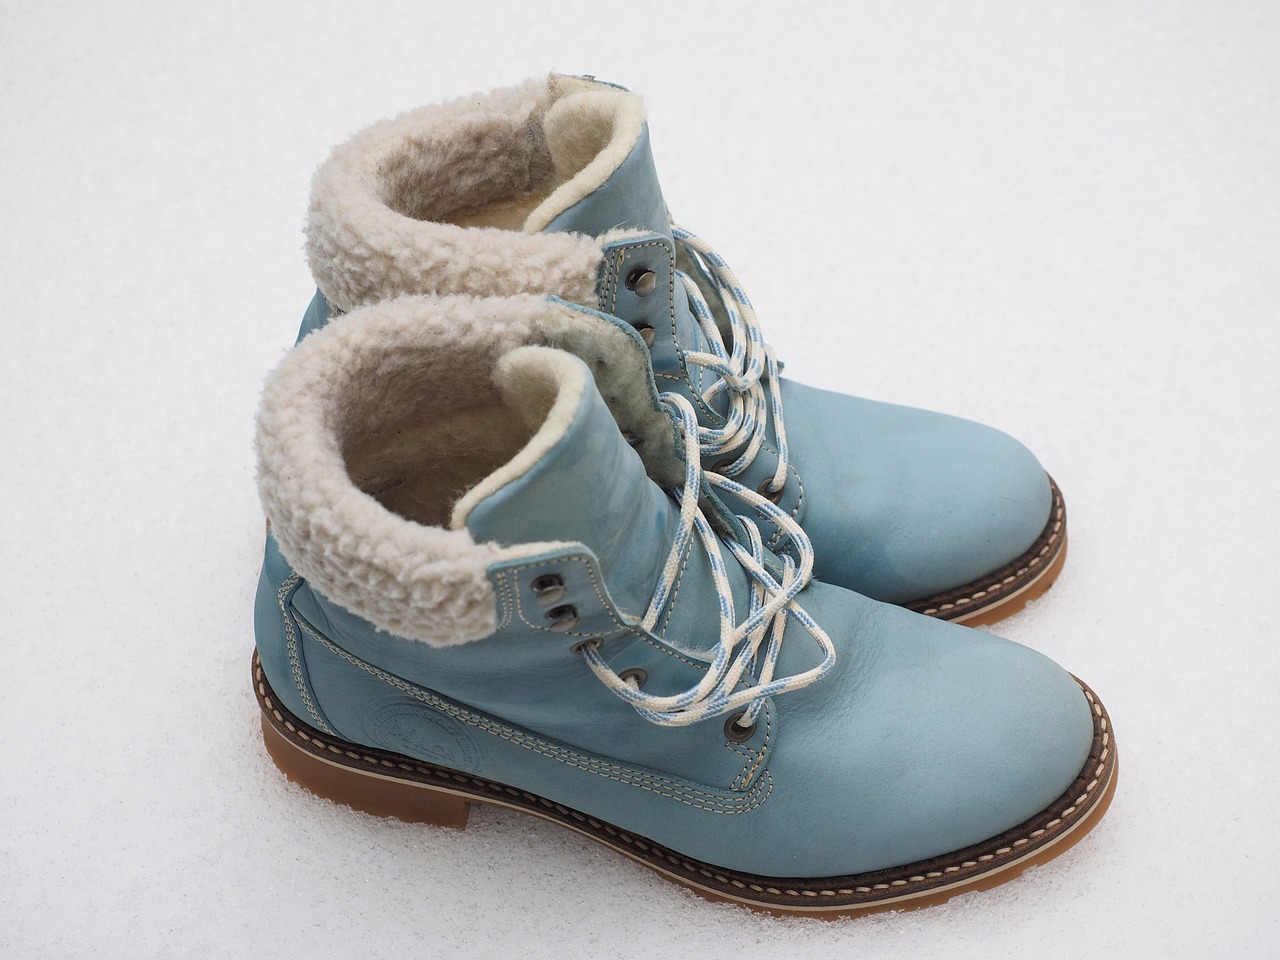 Buty zimowe – jak o nie zadbać podczas śniegu?